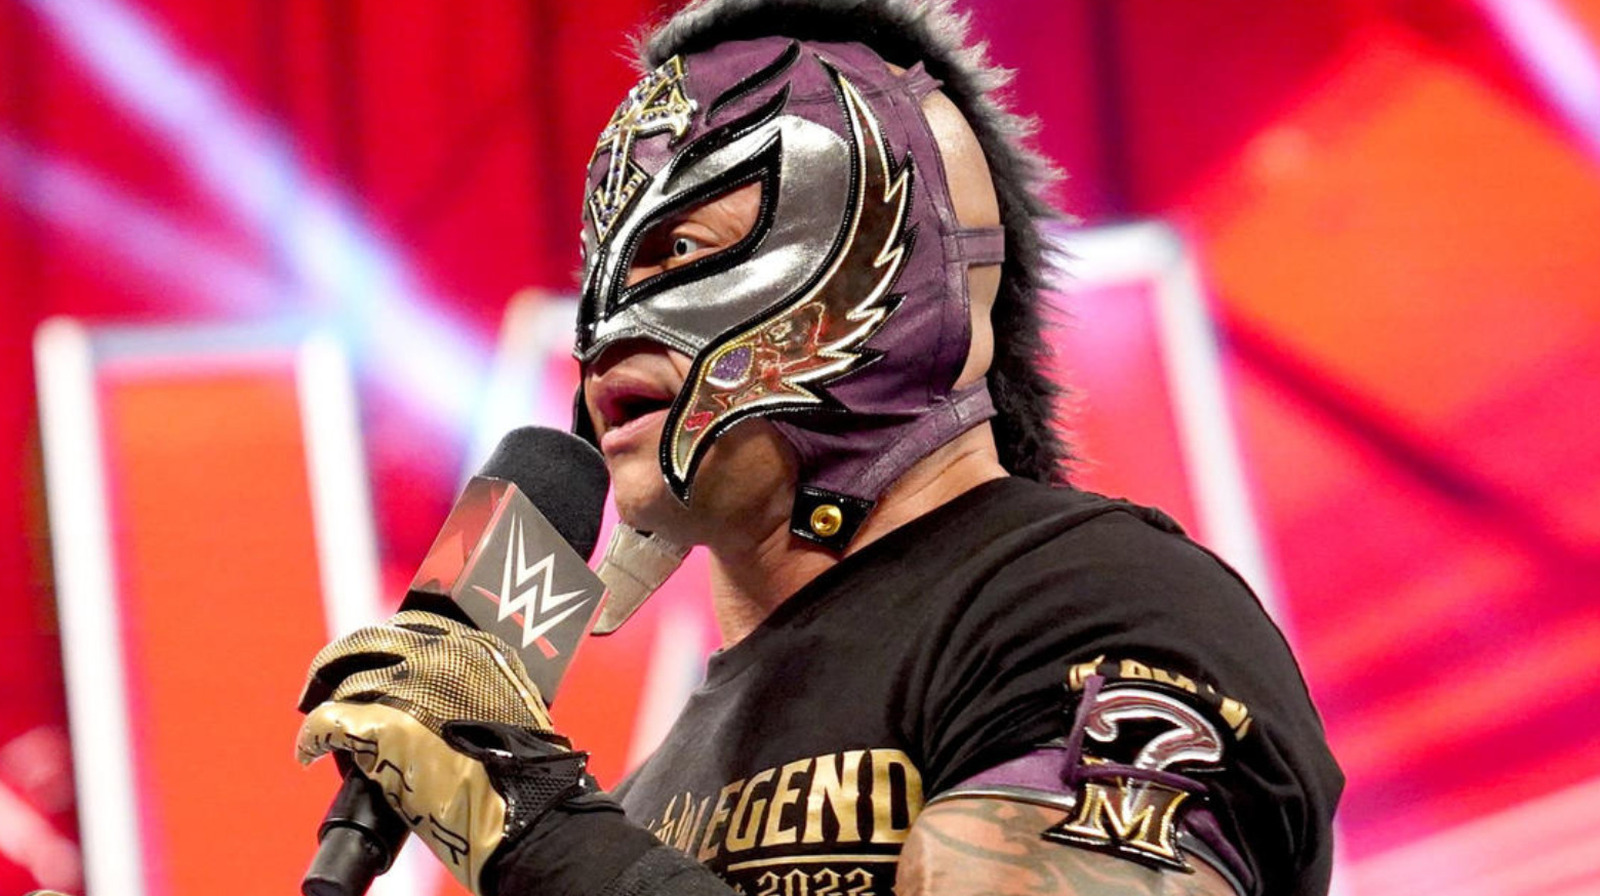 Rey Mysterio proporciona un posible plazo de retiro de la WWE, podría ser después de su 50 cumpleaños